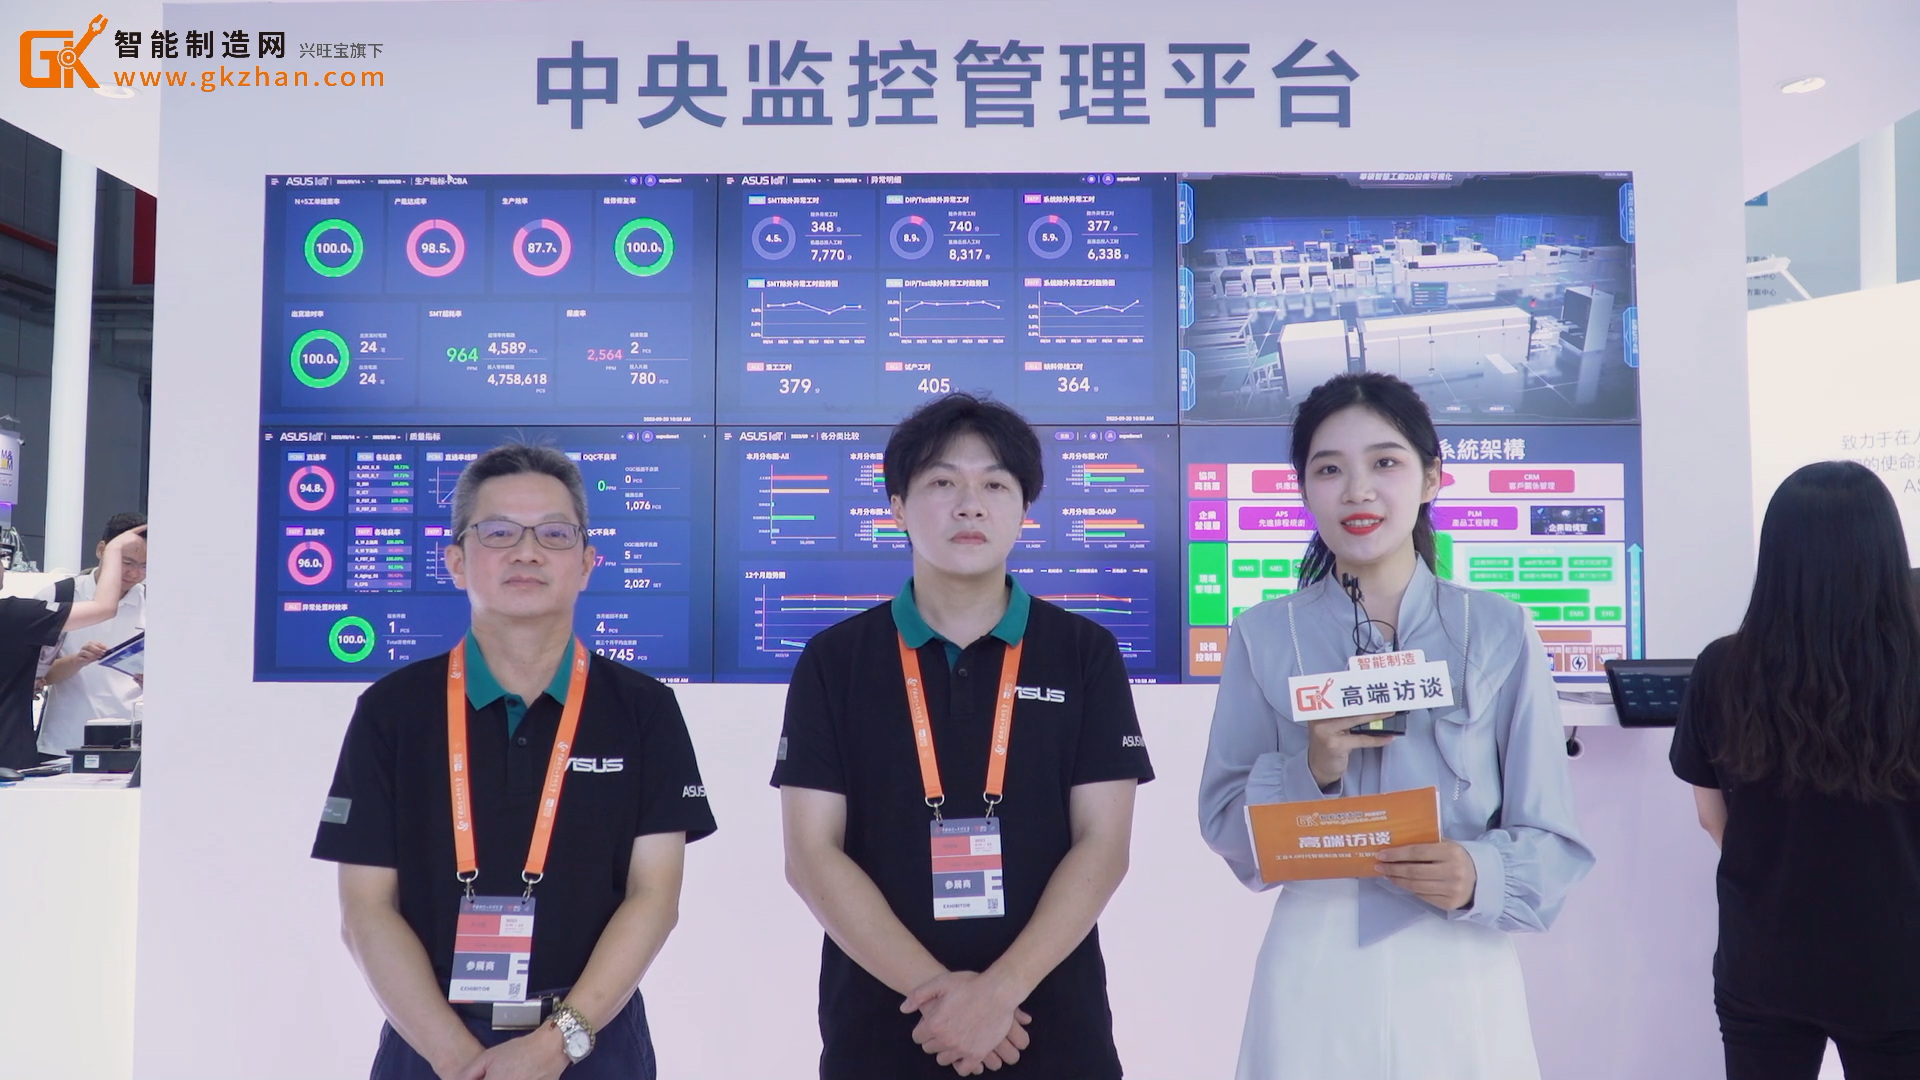 华硕携最新解决方案及硬件产品亮相第23届中国工博会